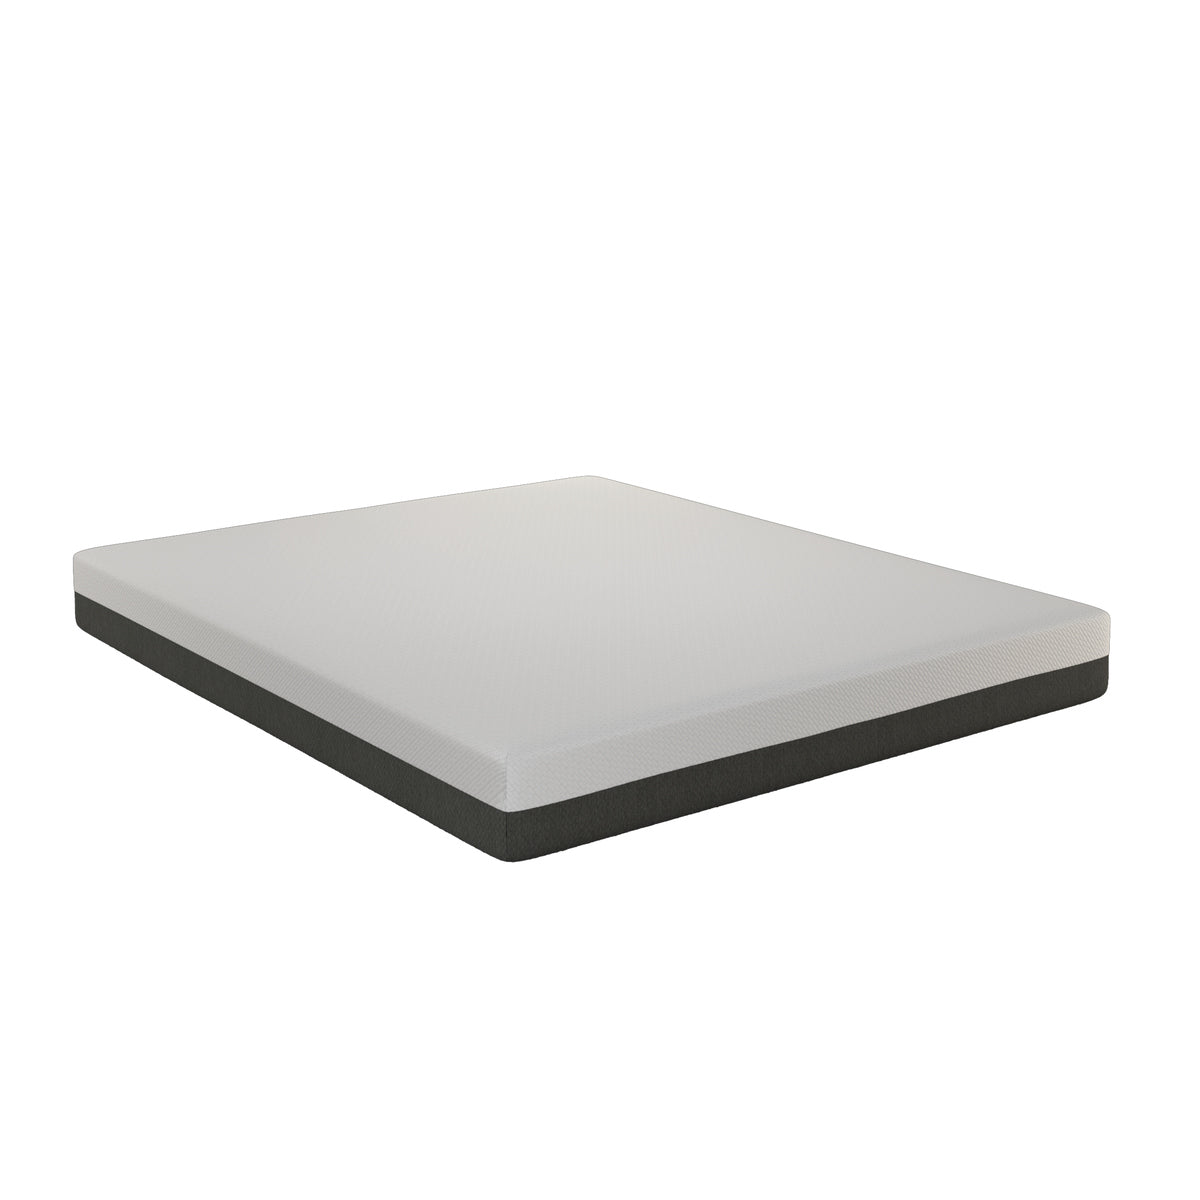 Nilkamal Tru Grid 6 inch Foam Mattress (White Grey)